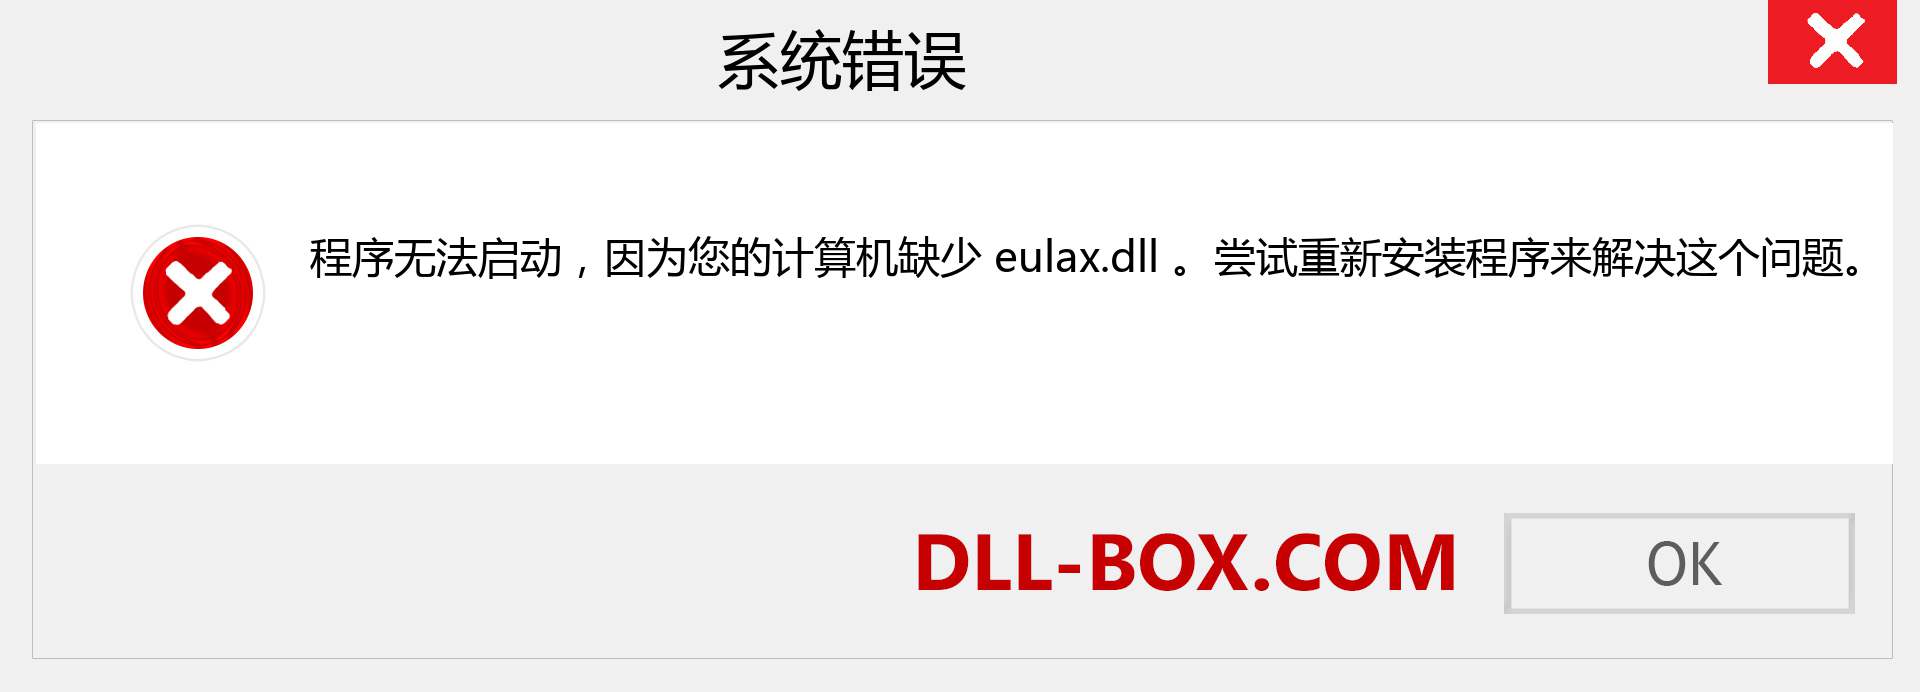 eulax.dll 文件丢失？。 适用于 Windows 7、8、10 的下载 - 修复 Windows、照片、图像上的 eulax dll 丢失错误